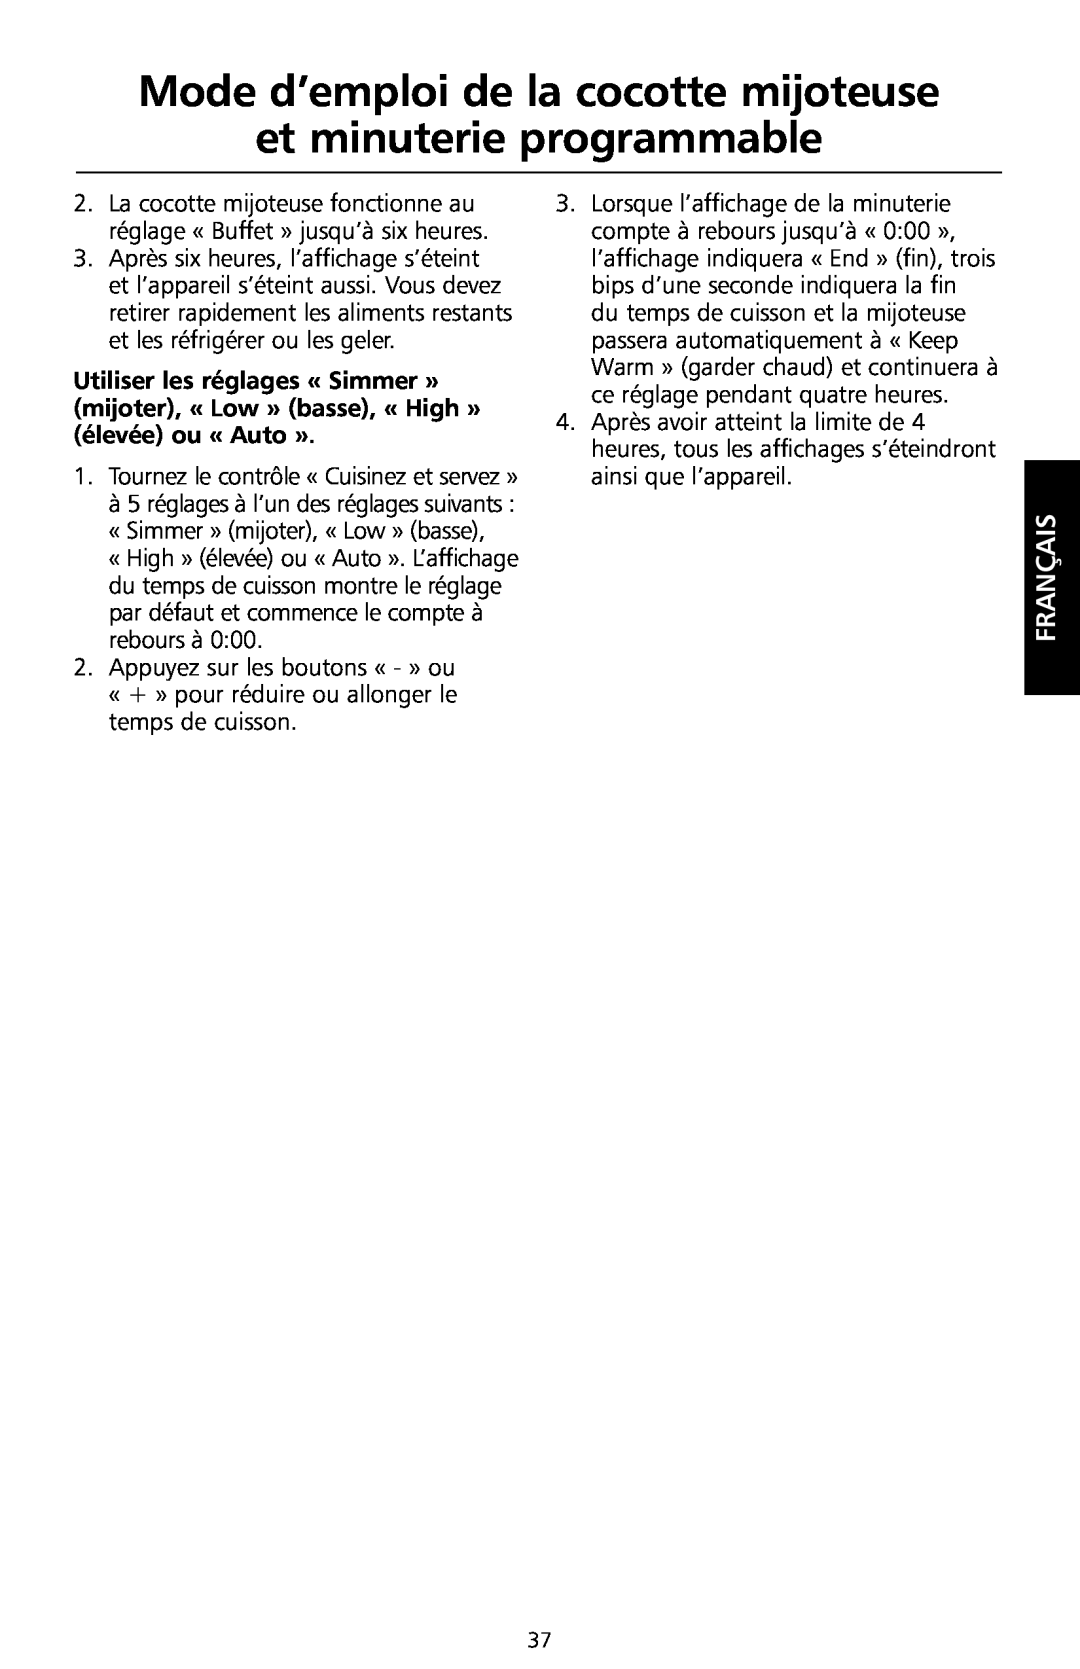 KitchenAid KSC700 manual Mode d’emploi de la cocotte mijoteuse et minuterie programmable, Français 